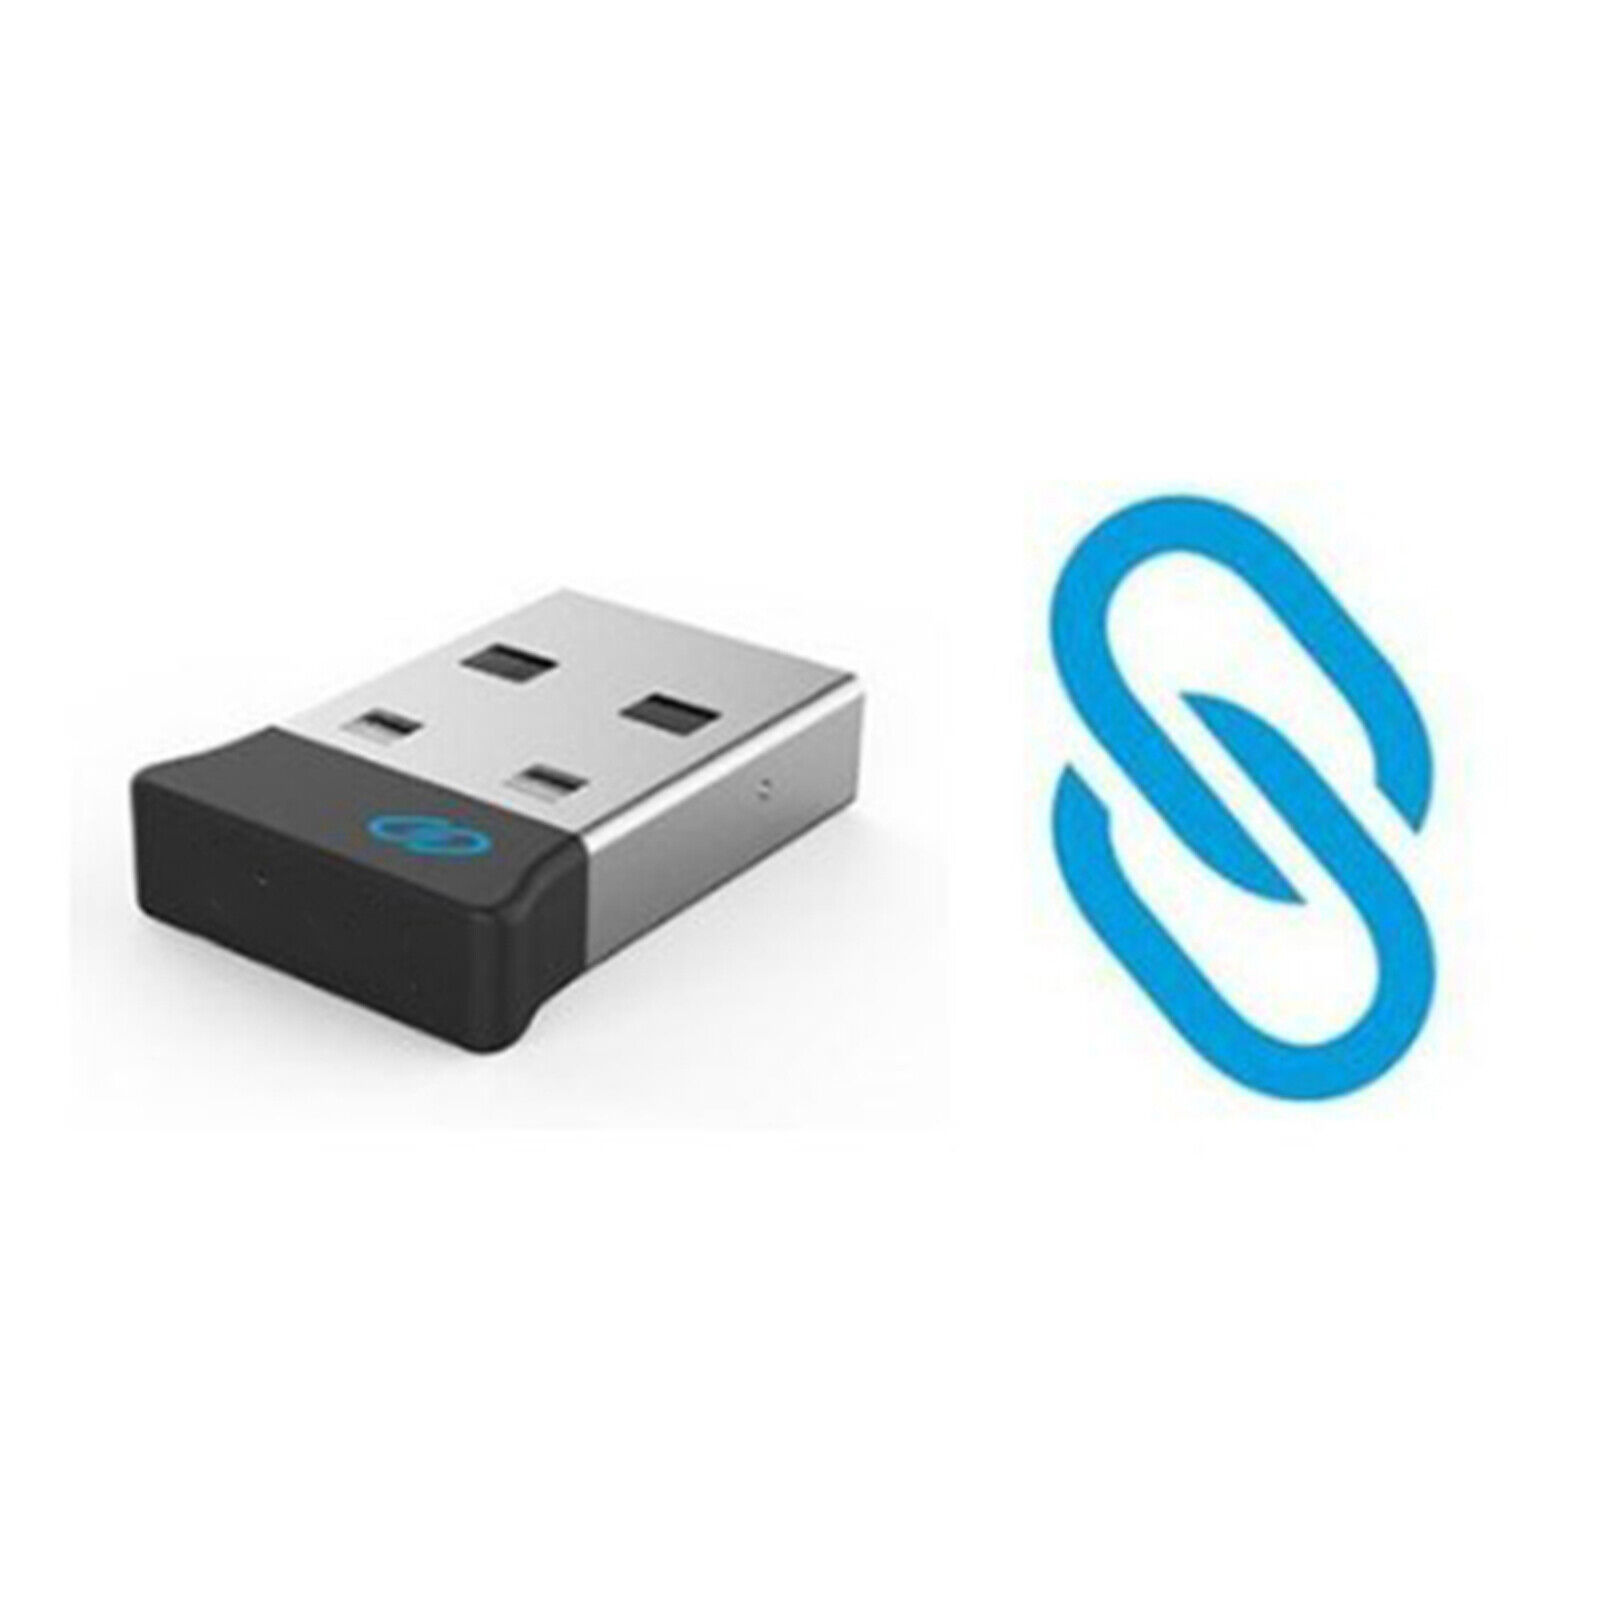 Universal USB Receiver for Wireless Keyboard Mouse WM514/KM714/KM717/WM326